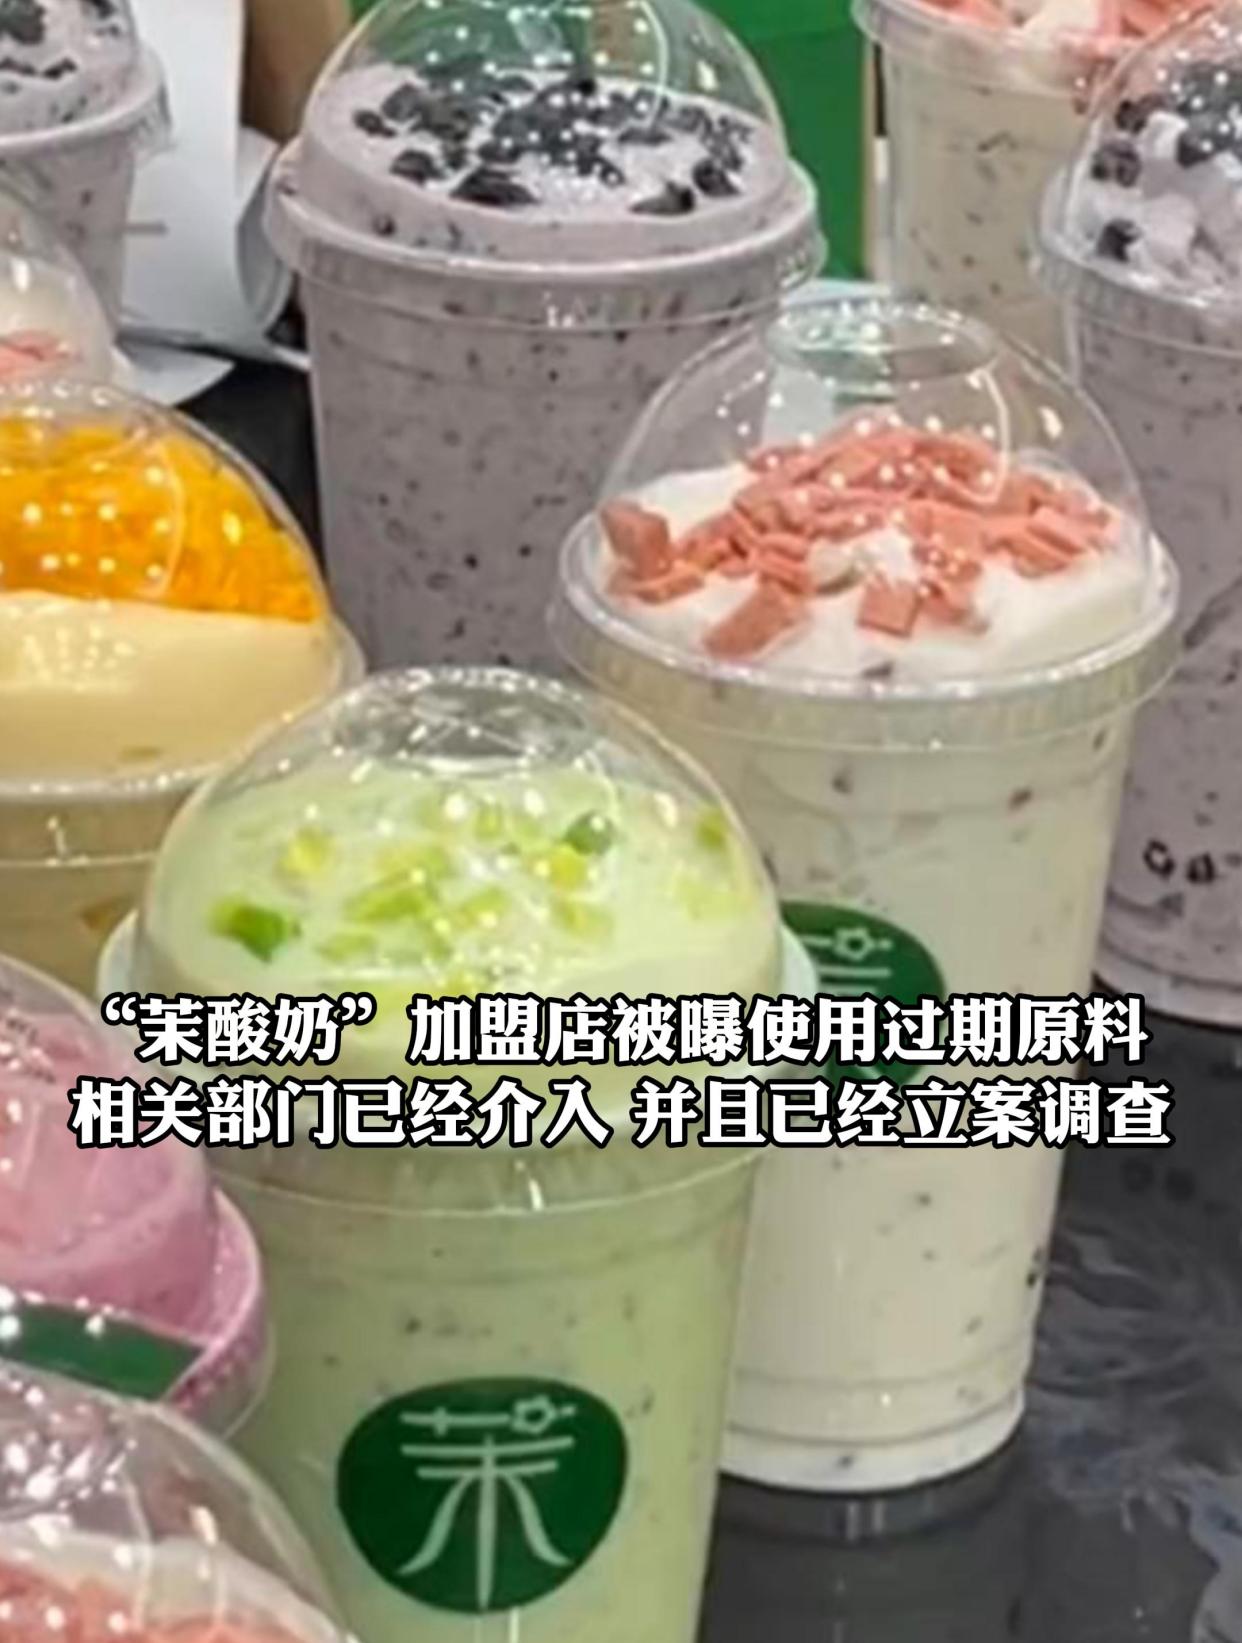 茉酸奶加盟店被曝使用过期原料